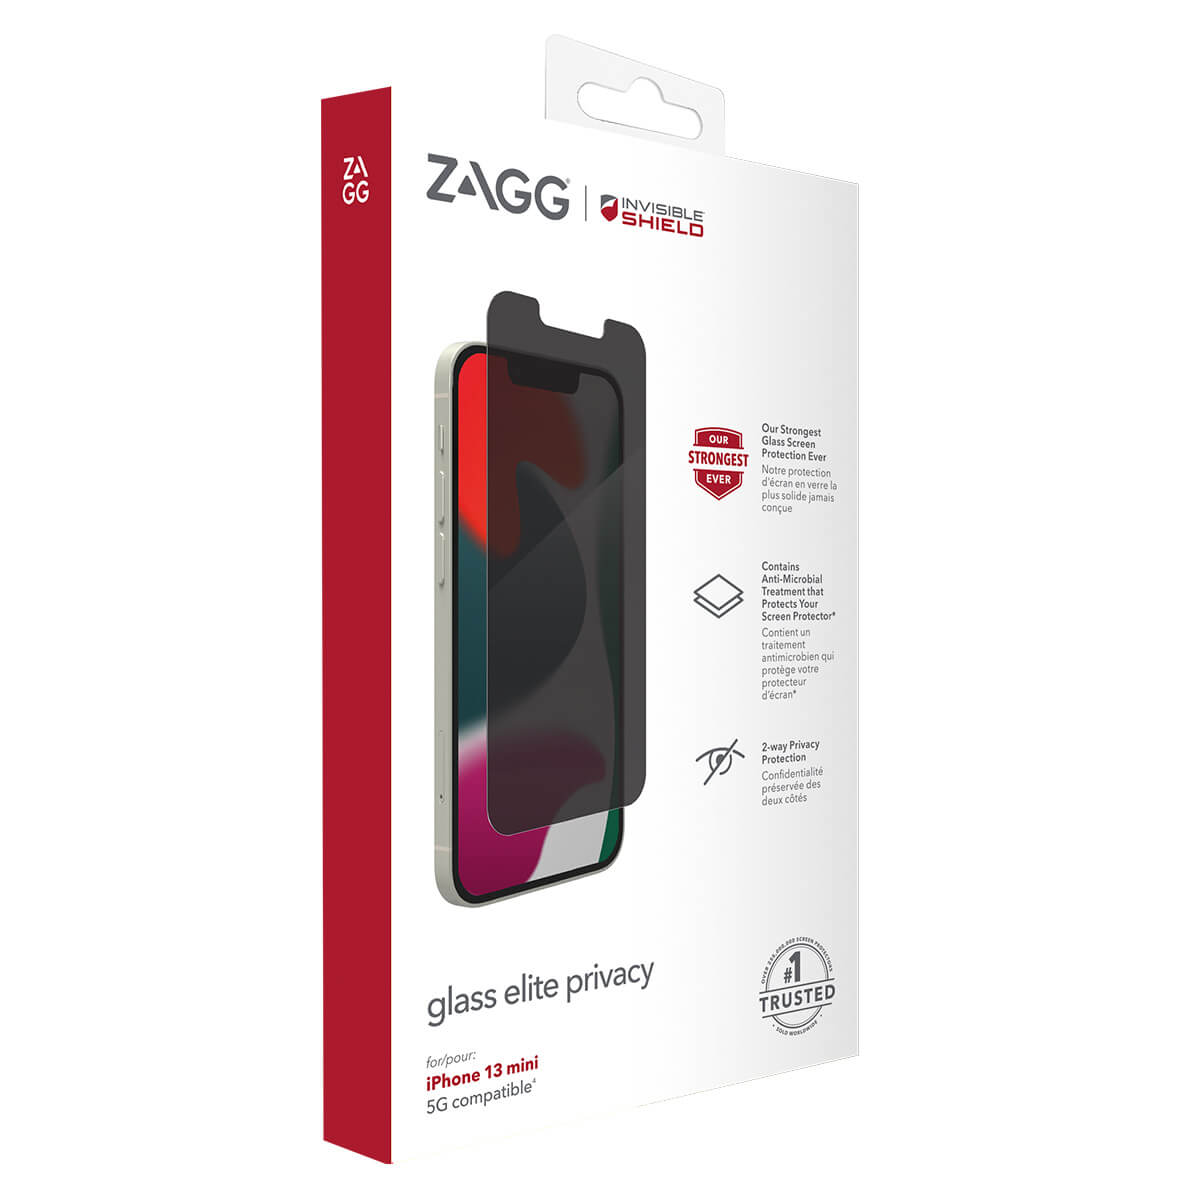 Zagg InvisibleShield iPhone 13 Mini Screen Protector Glass Elite Edge Privacy